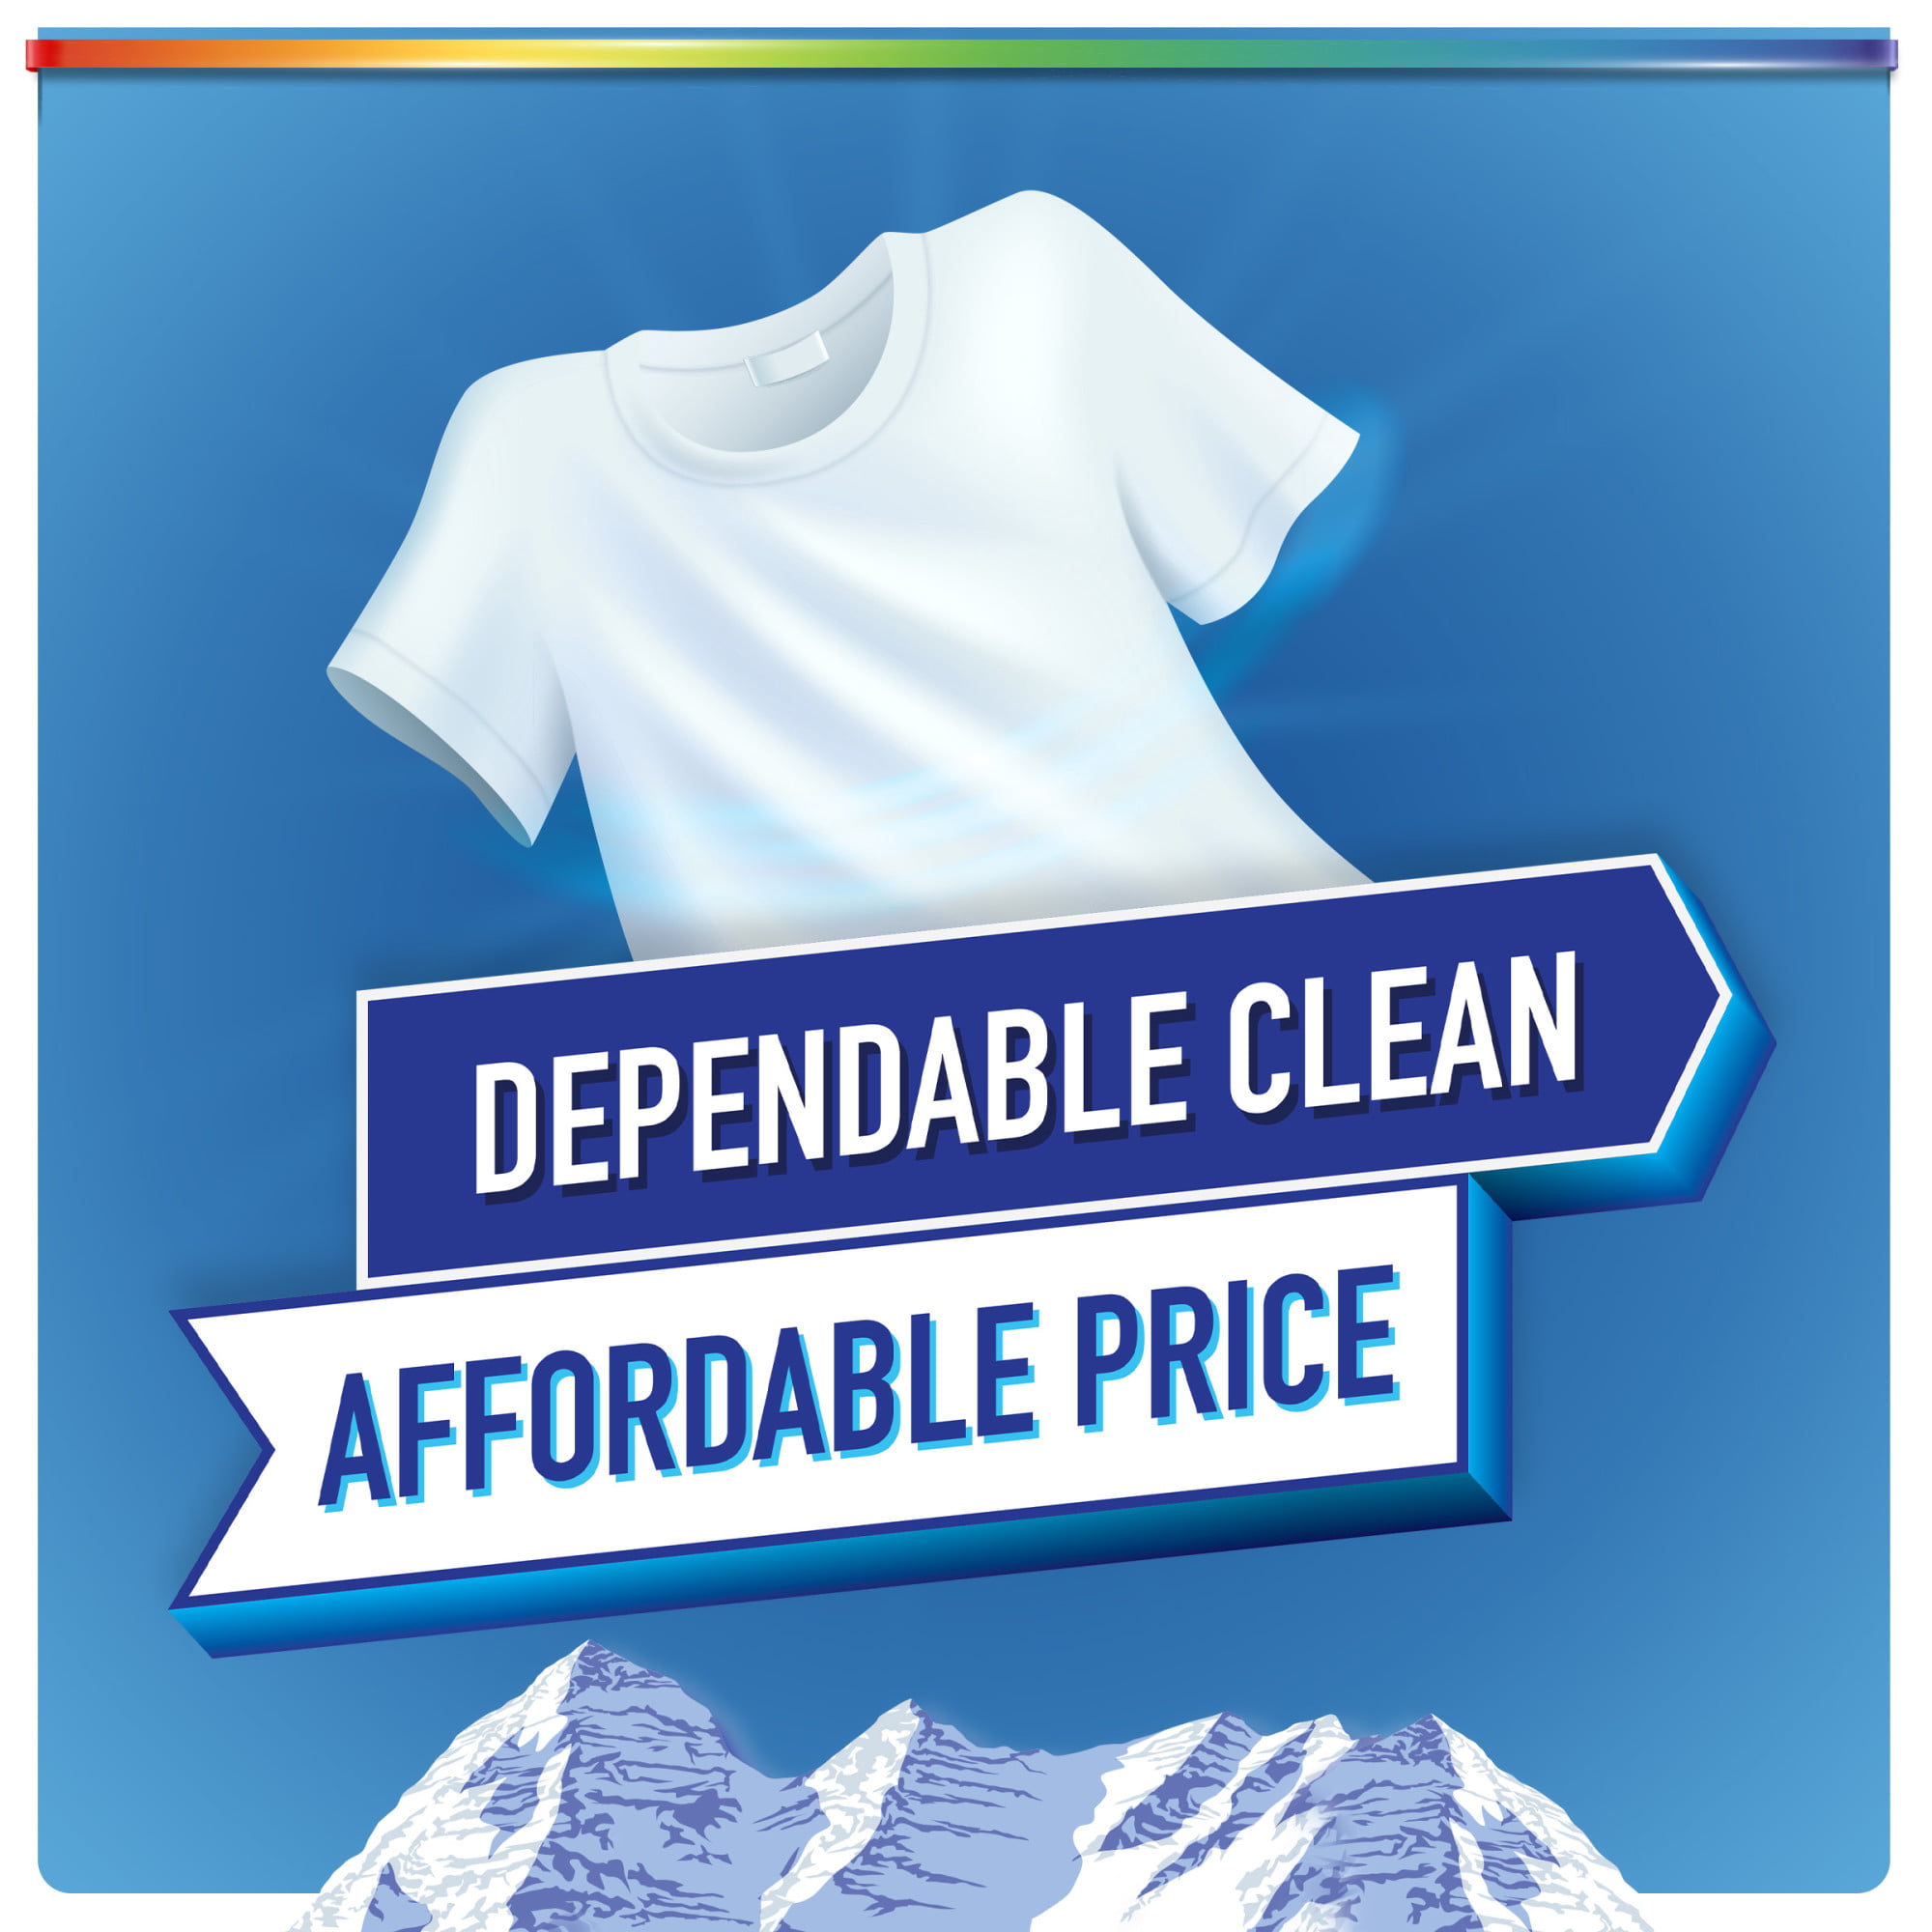 Purex Liquid Laundry Detergent, Mountain Breeze, 150 Fluid Ounces, 115 Loads